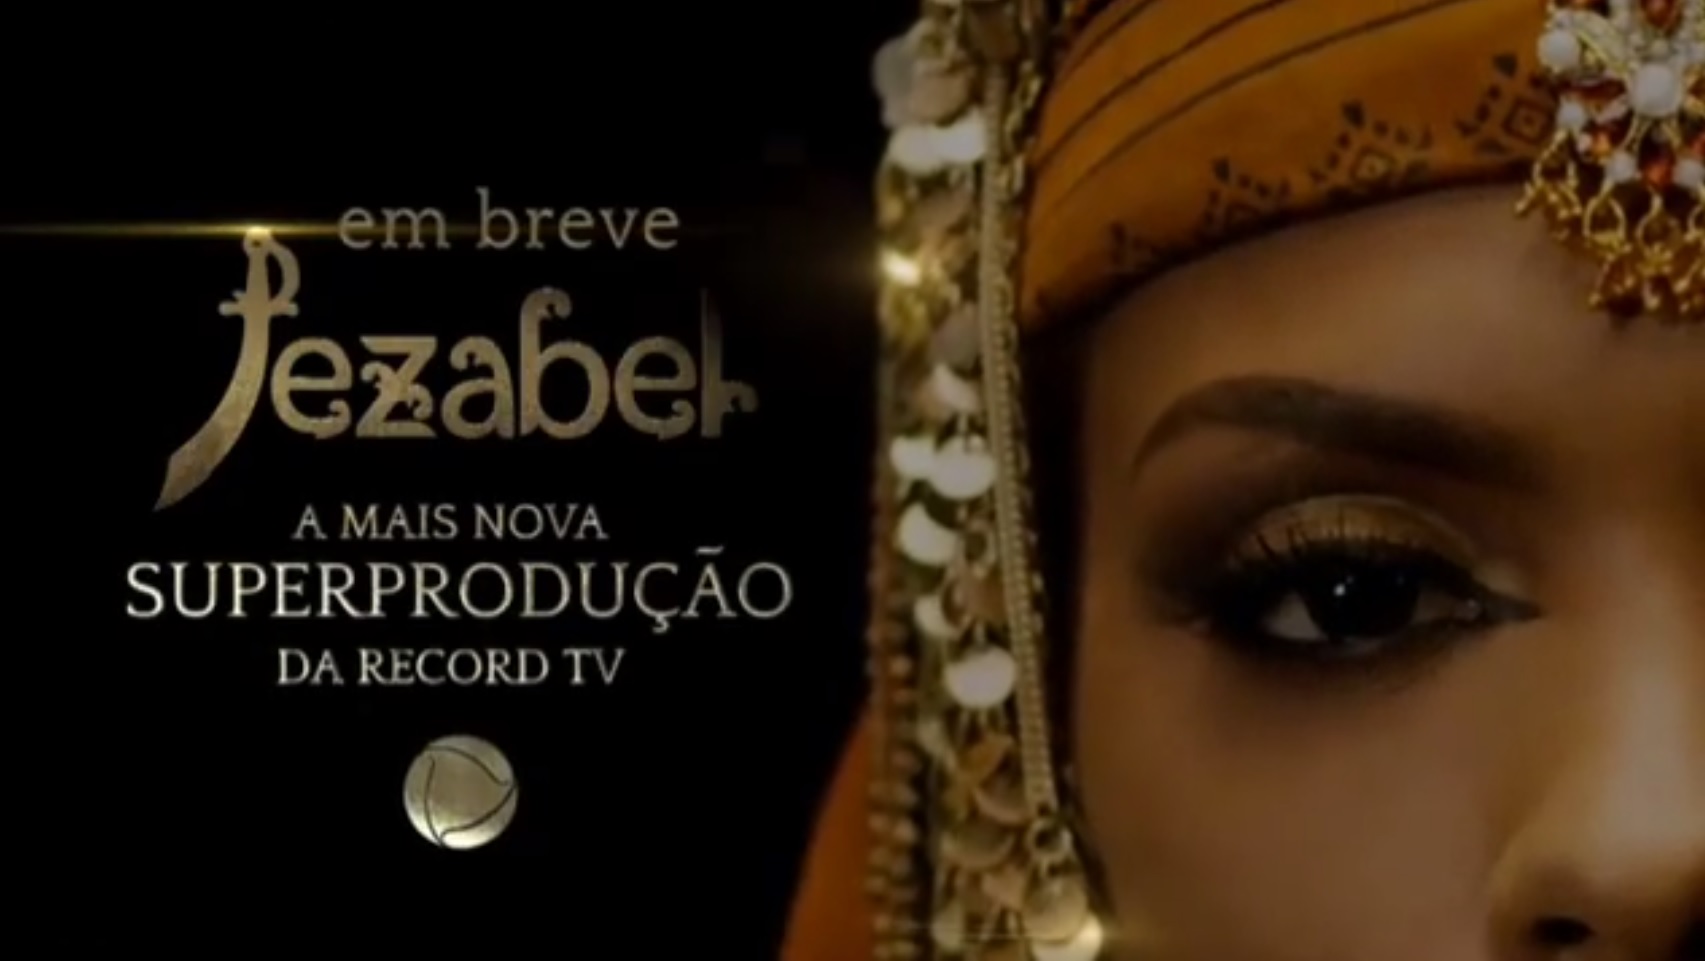 Jezabel, próxima novela da RecordTV (foto: Divulgação)